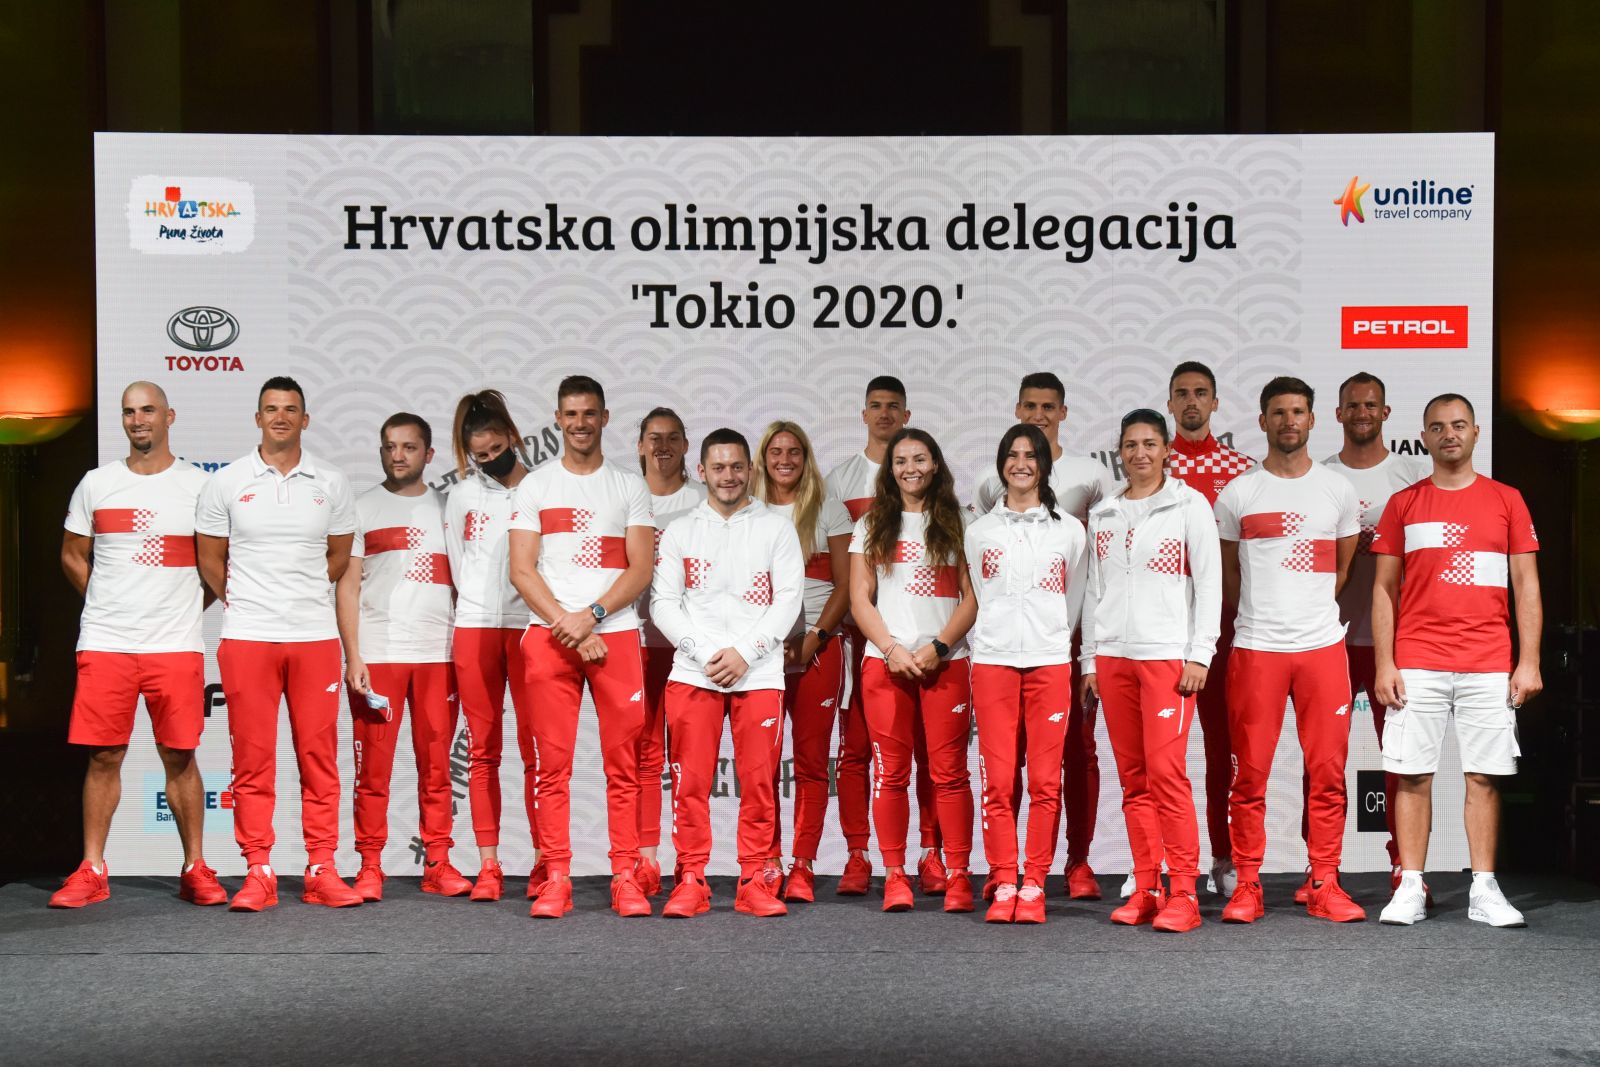 12.07.2021., Zagreb - Odlazak olimpijaca u Tokio. 

Photo: Sasa ZinajaNFoto